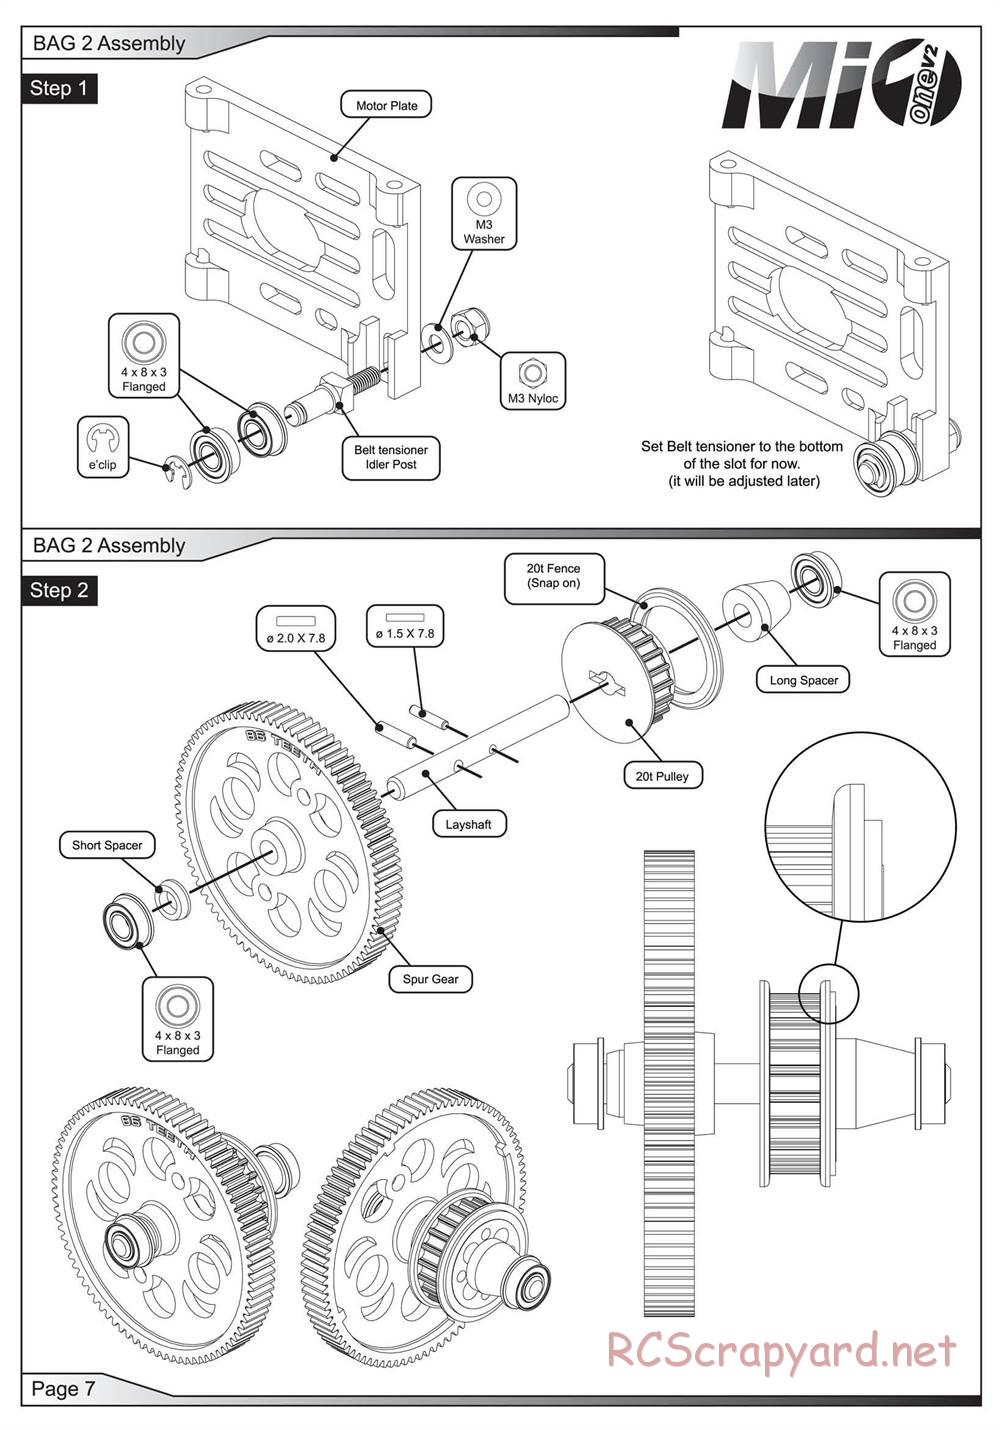 Schumacher - Mi1v2 - Manual - Page 8